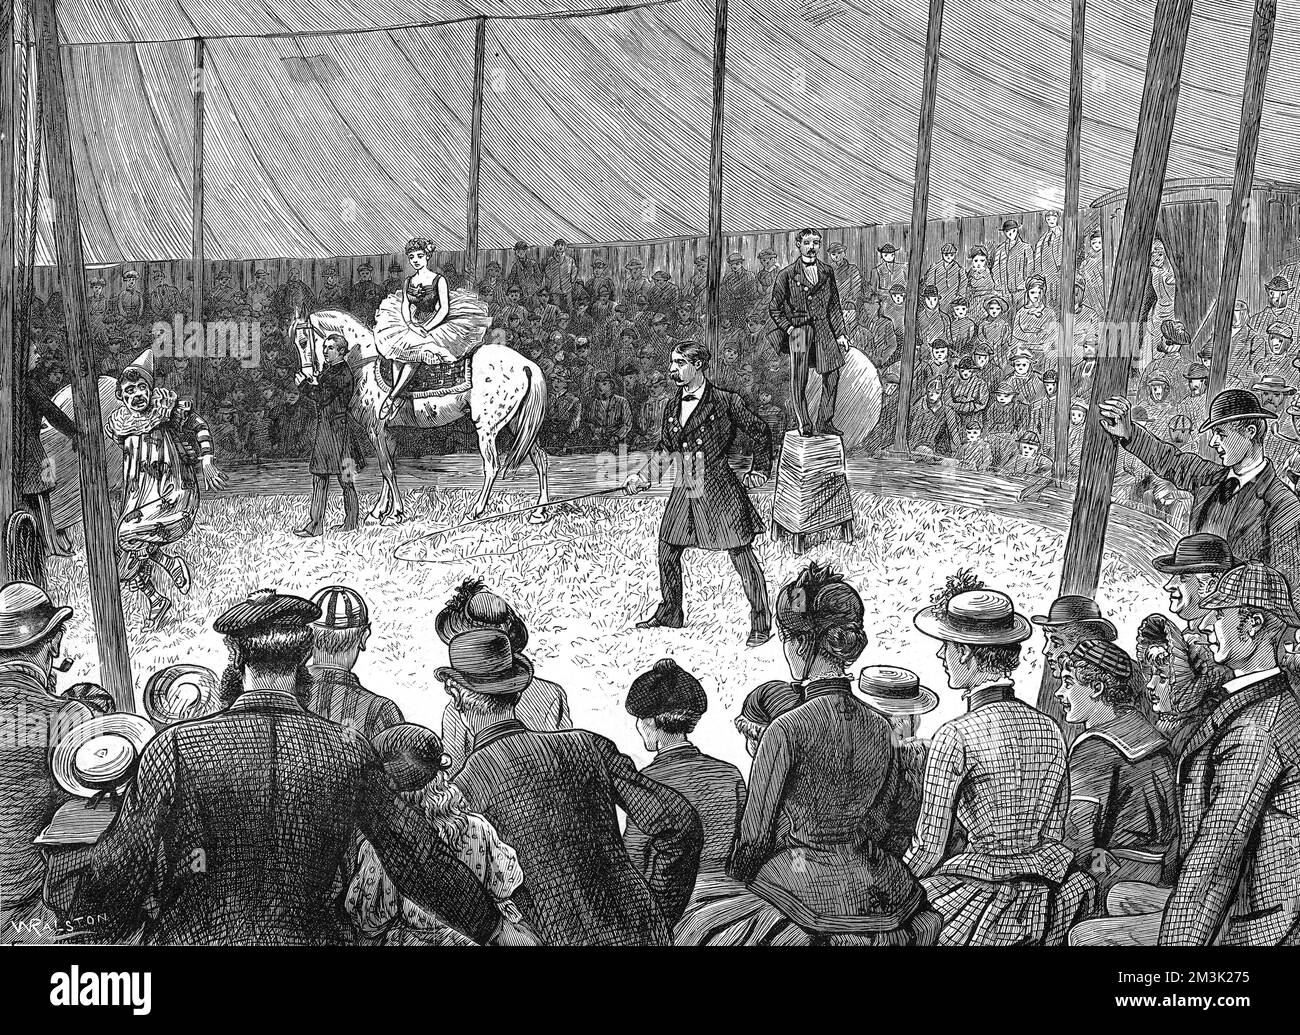 Gravur einer laufenden Vorstellung während eines Zirkusbesuchs in einer englischen Landstadt, c.1886. Die Zuschauer sehen sich amüsiert an, wie der Ringmeister dem Clown mit seiner Peitsche eine Peitsche schlägt. 1886 Stockfoto